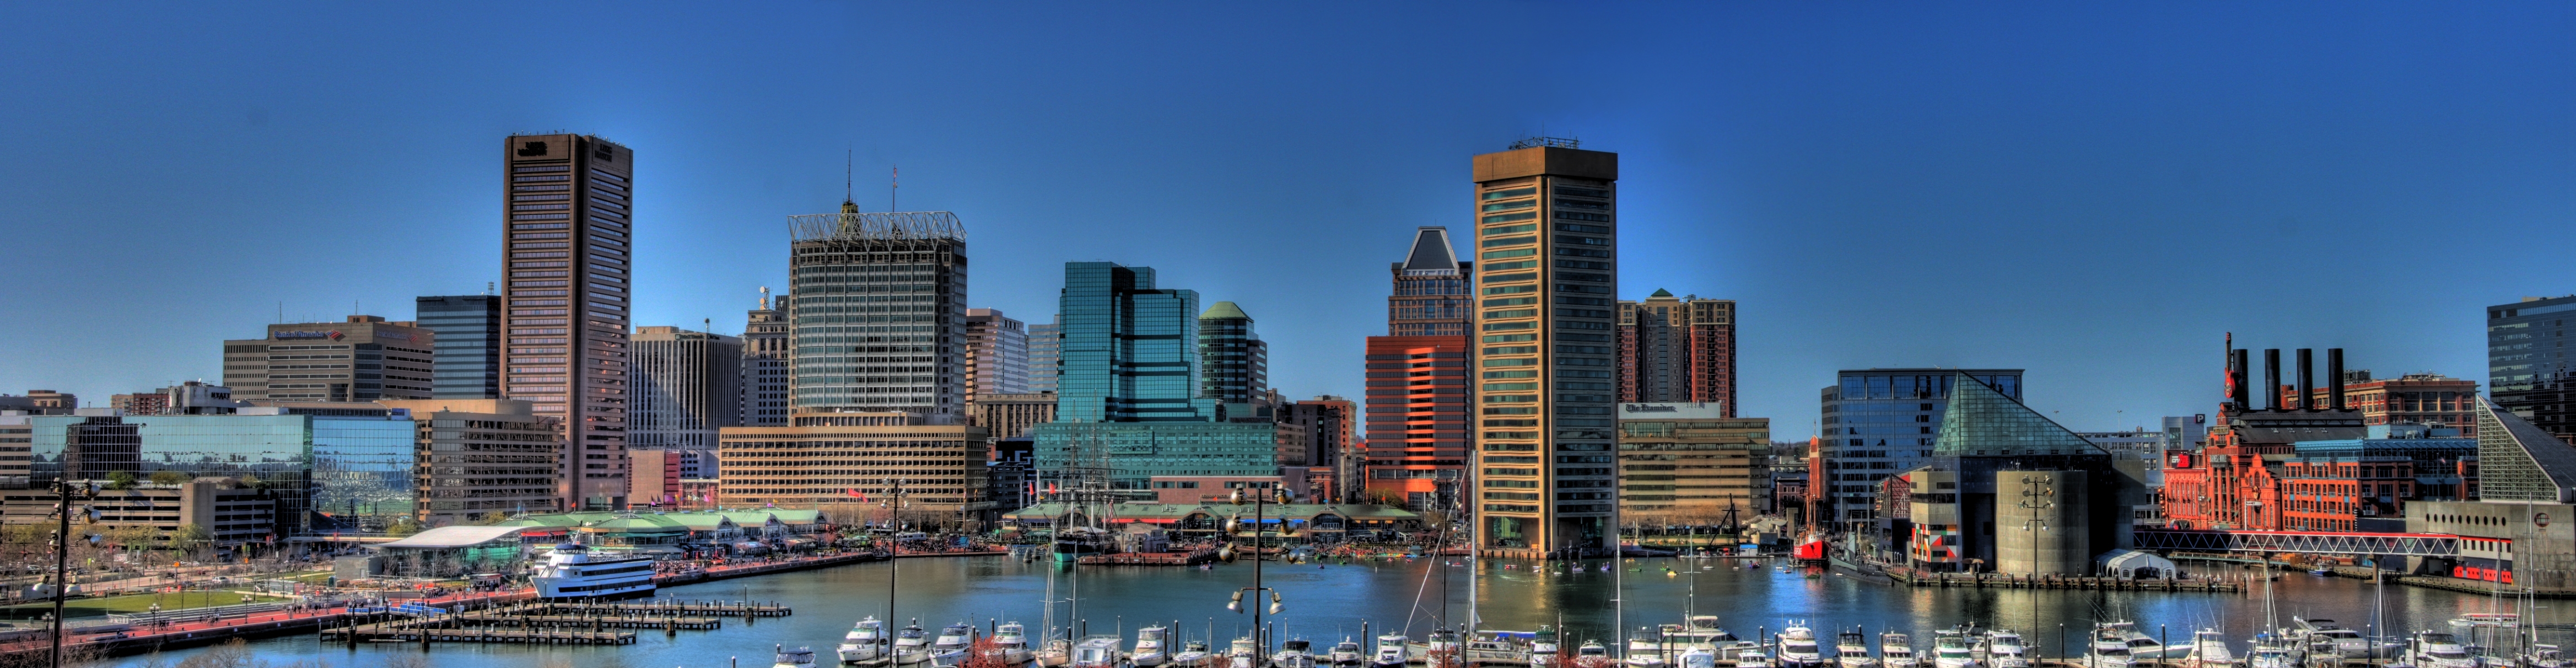 Man Made Baltimore HD Wallpaper | Background Image